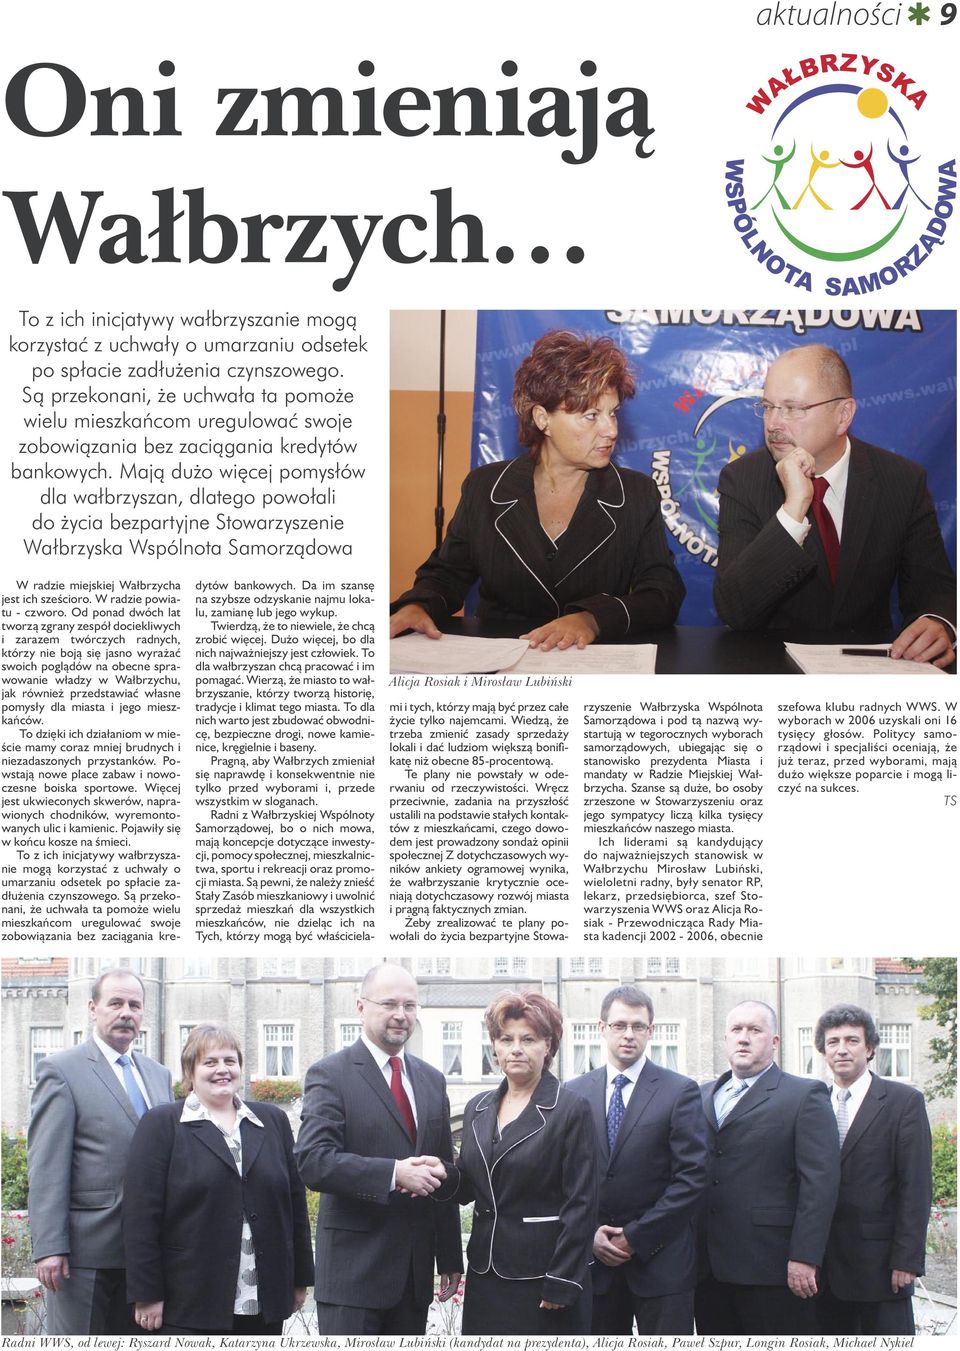 Mają dużo więcej pomysłów dla wałbrzyszan, dlatego powołali do życia bezpartyjne Stowarzyszenie Wałbrzyska Wspólnota Samorządowa W radzie miejskiej Wałbrzycha jest ich sześcioro.